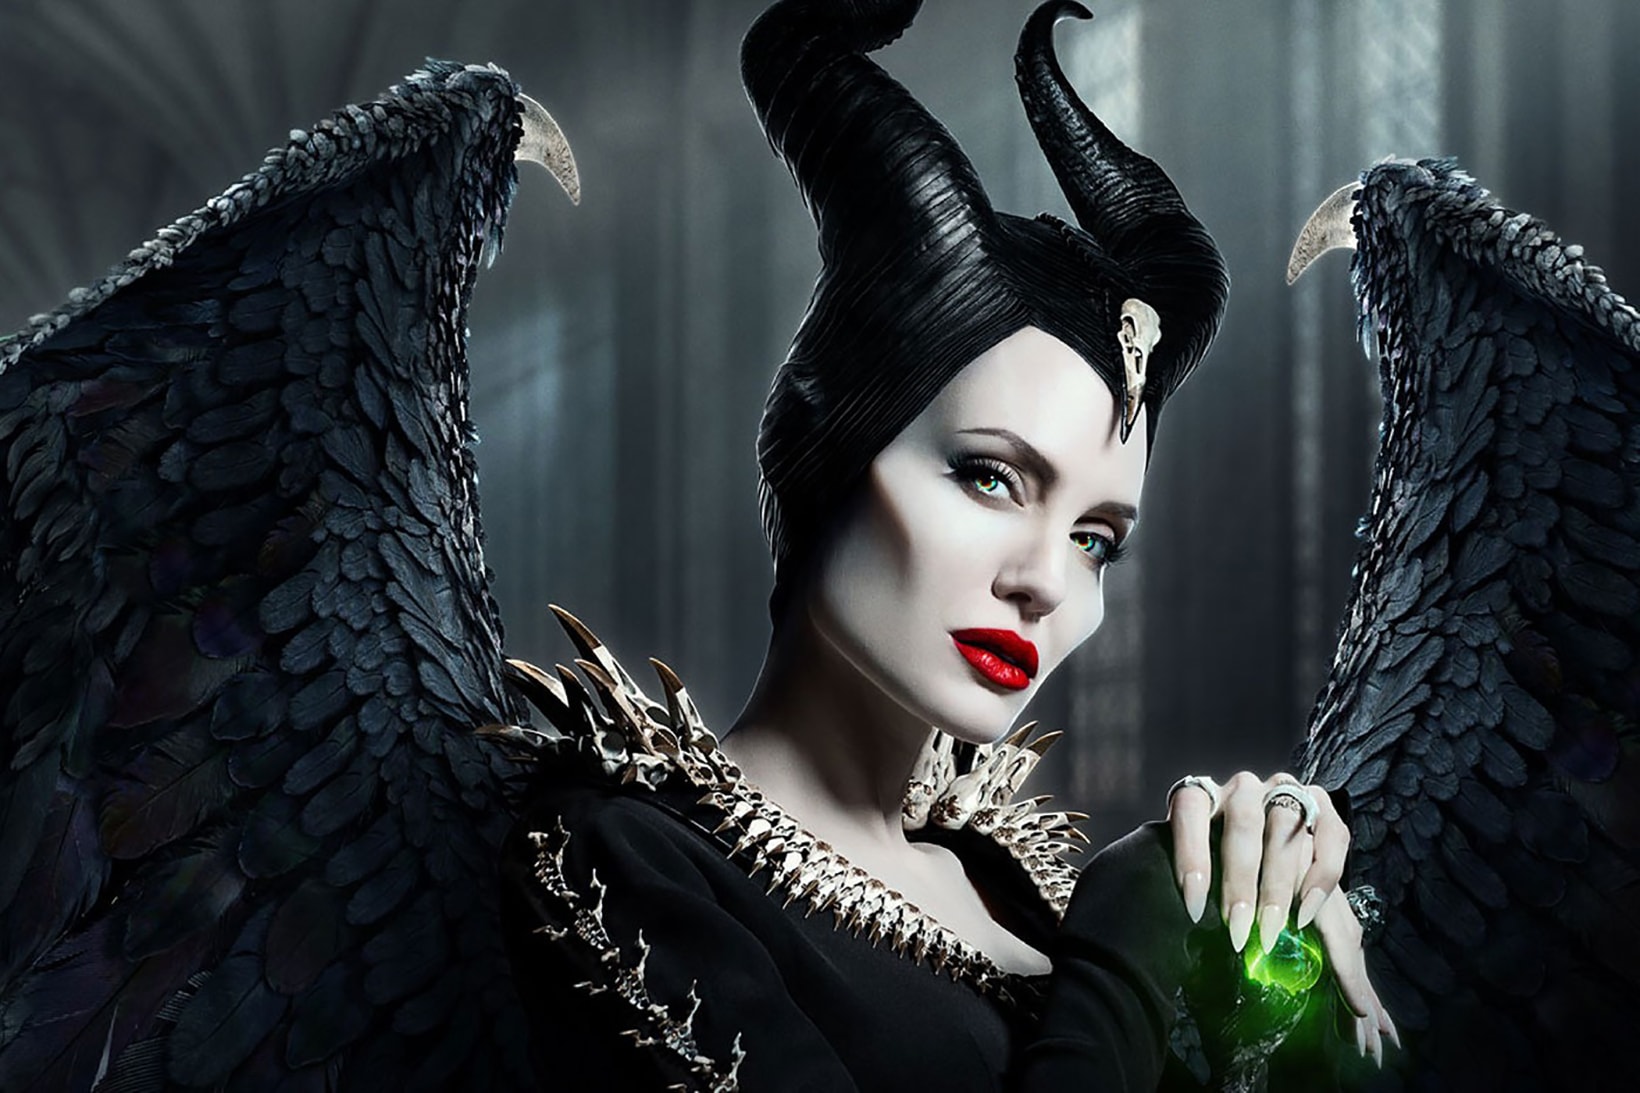 Recreate Maleficent's Makeup Look for Halloween